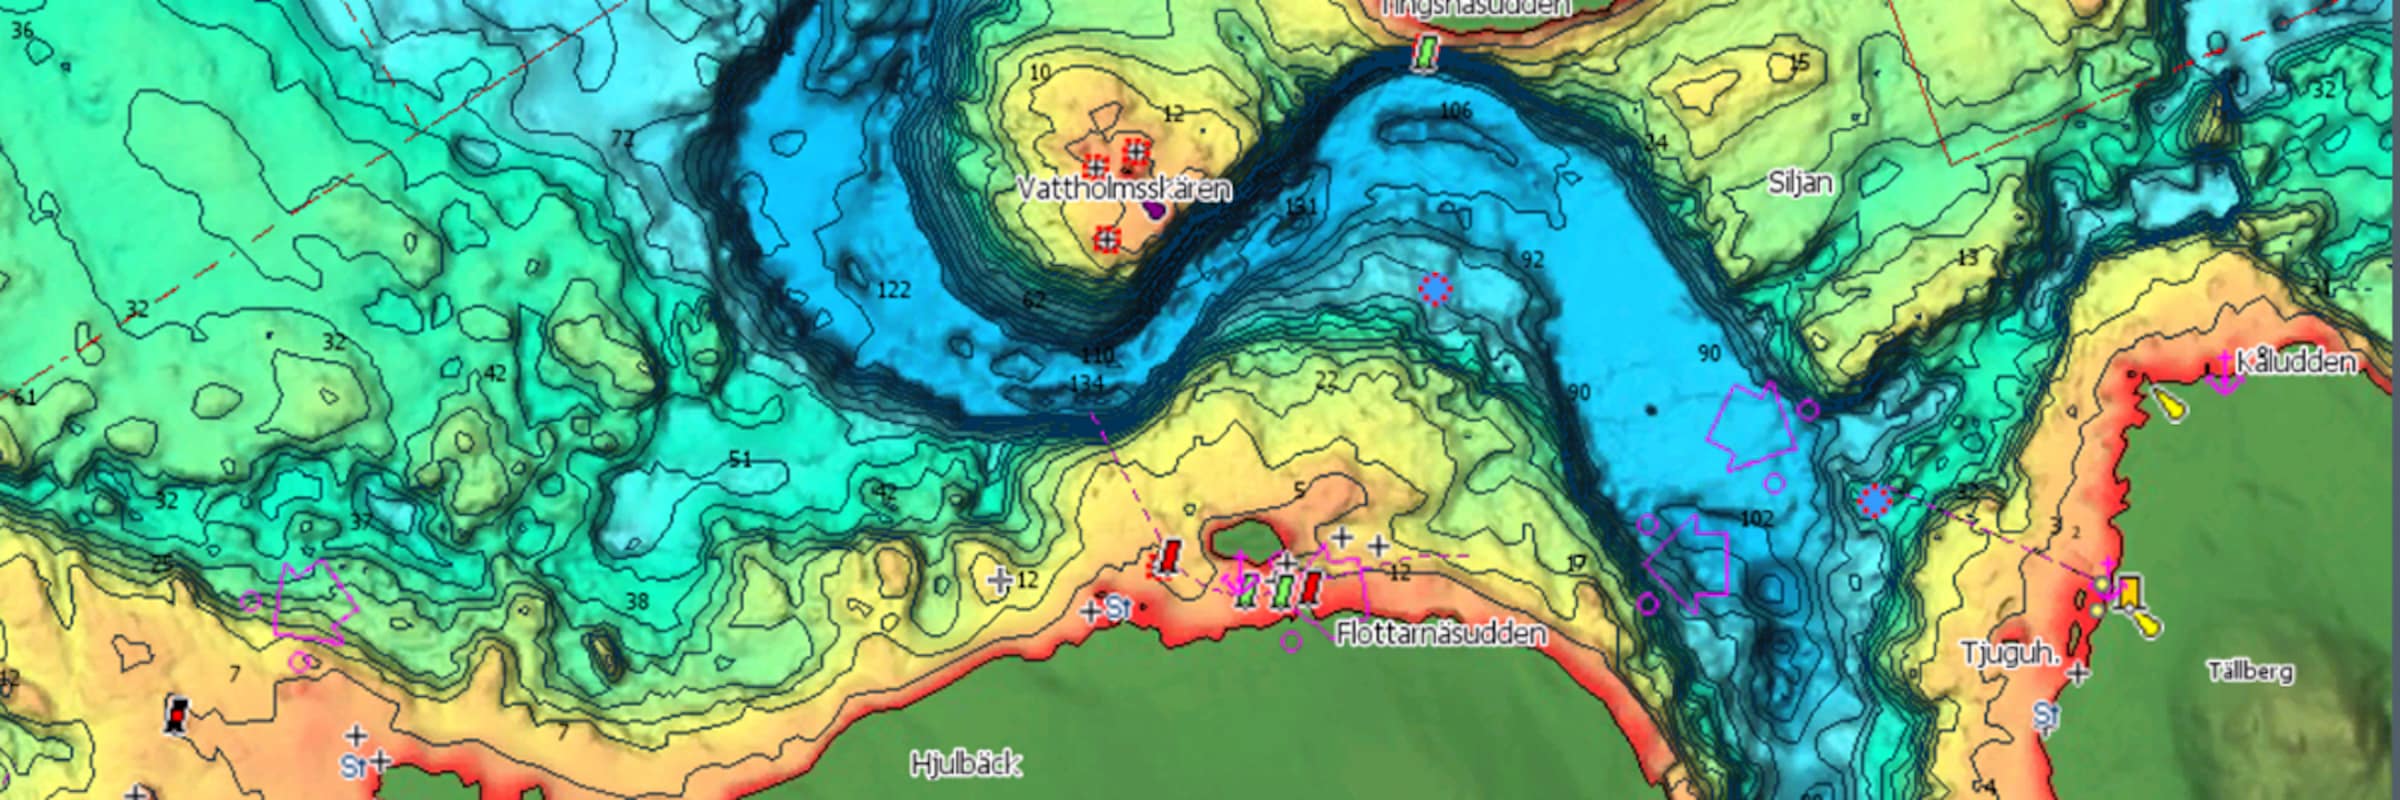 Köp Digitala sjökort & kartor superbilligt online hos olssonsfiske.se